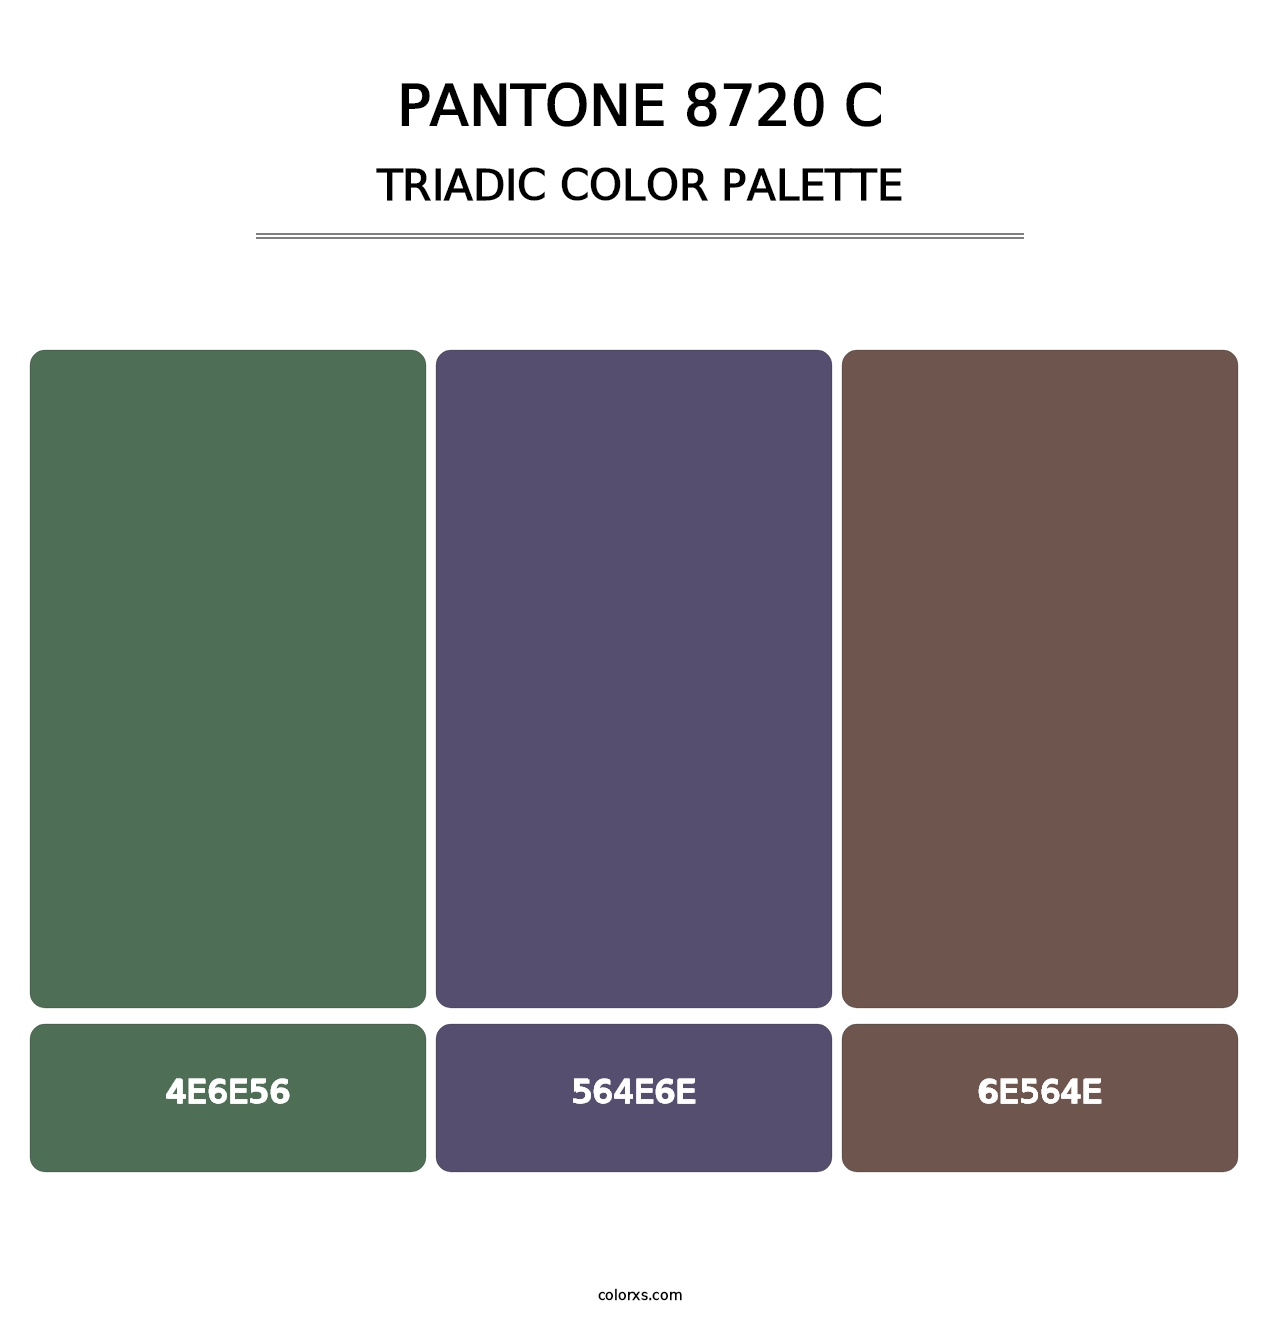 PANTONE 8720 C - Triadic Color Palette